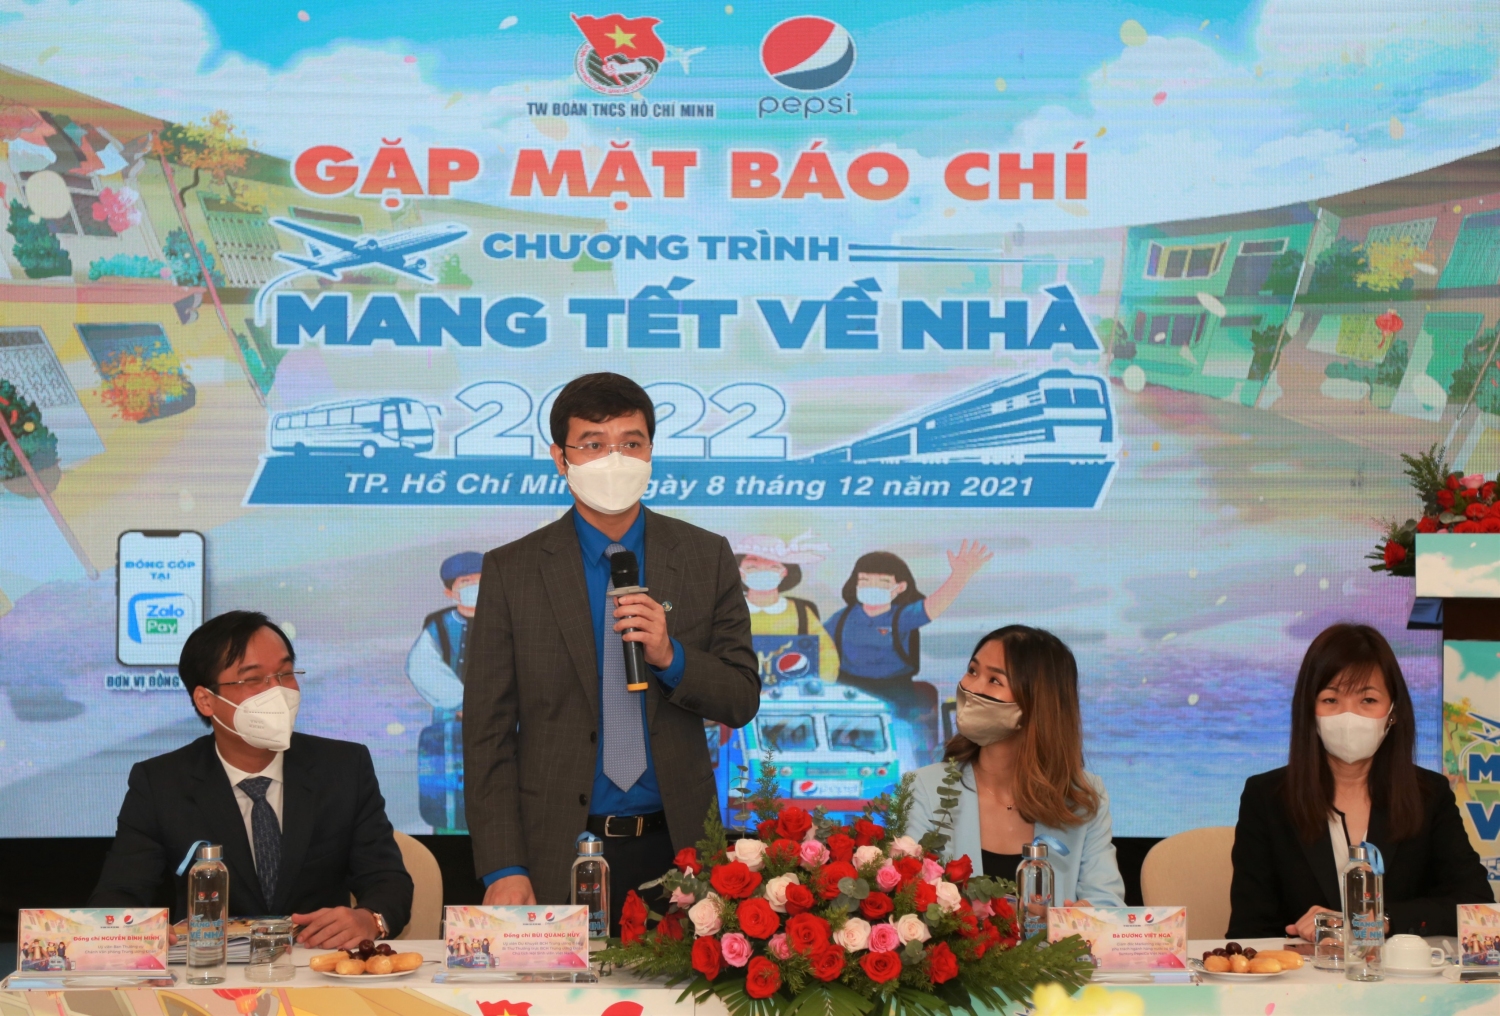 Đồng chí Bùi Quang Huy - Ủy viên dự khuyết BCH Trung ương Đảng, Bí thư thường trực Trung ương Đoàn, Chủ tịch Hội Sinh viên Việt Nam phát biểu tại buổi gặp mặt báo chí phát động chương trình "Mang Tết về nhà" năm 2022.